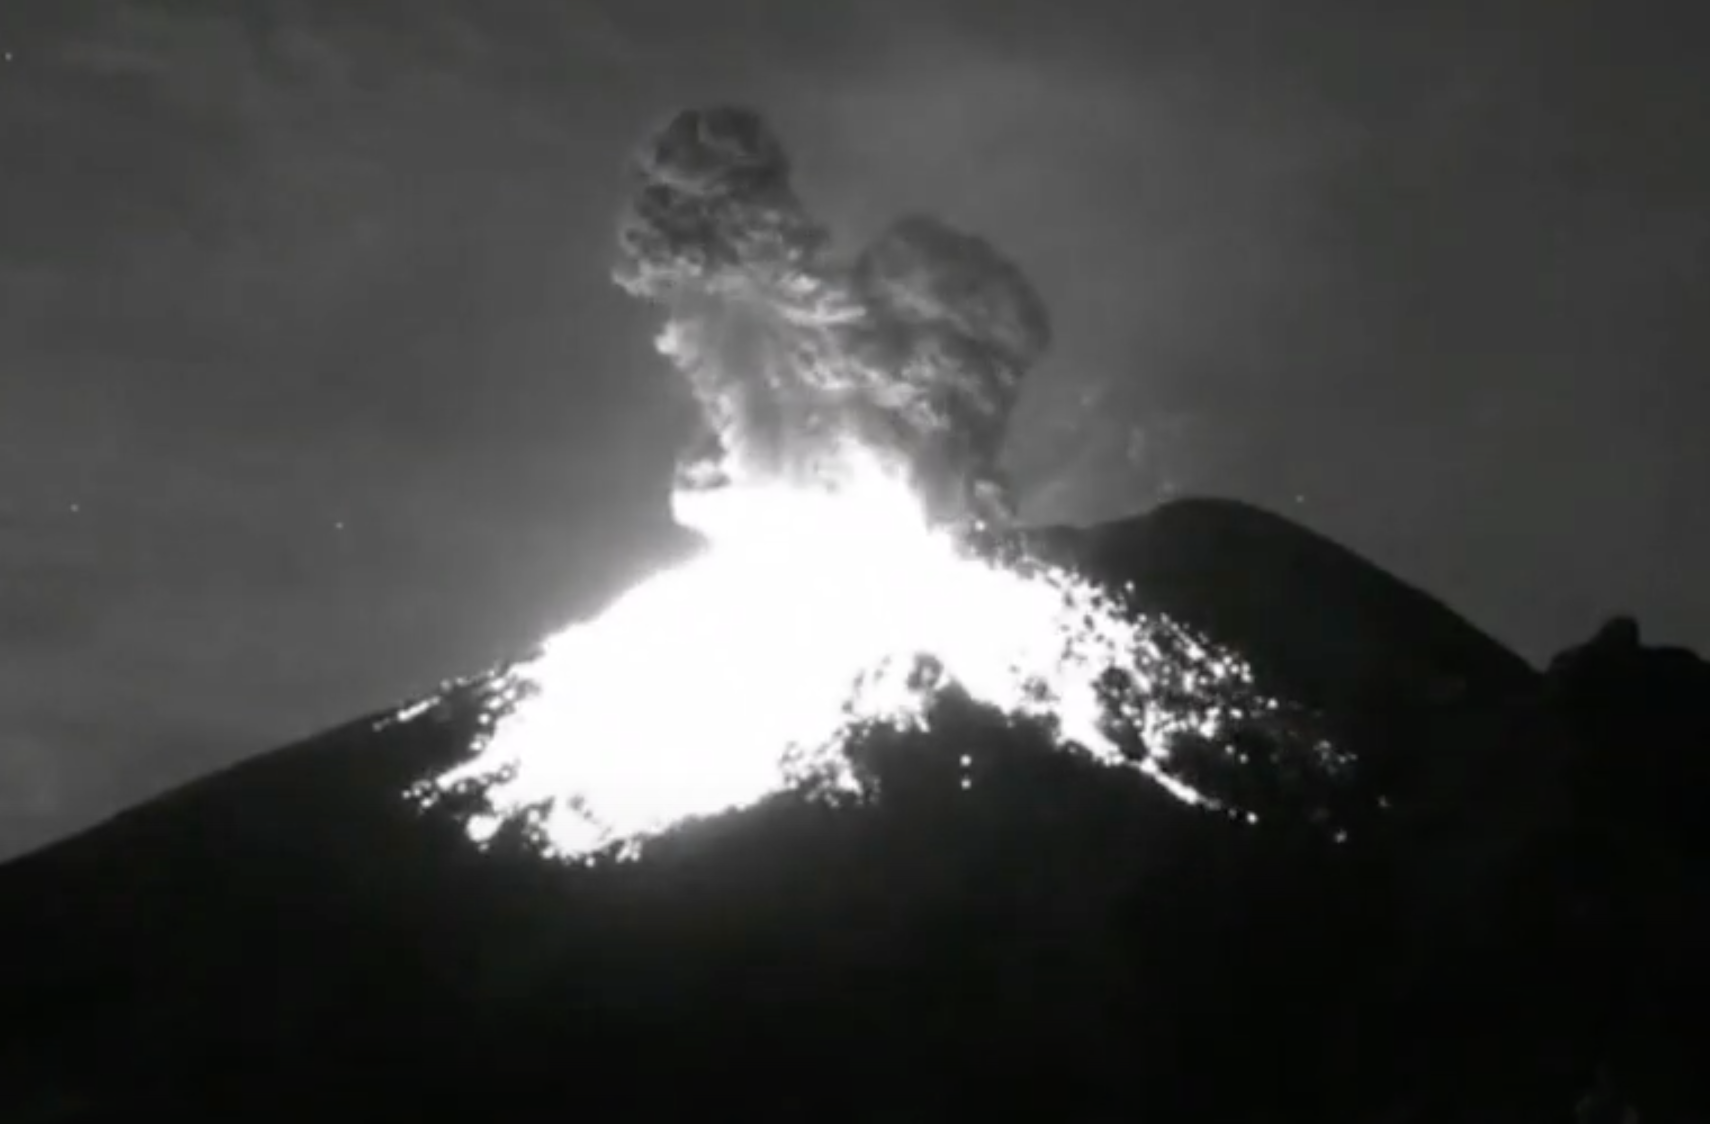 El volcán Popocatépetl, cuyo nombre en náhuatl significa “cerro humeante”, es monitoreado de forma continua las 24 horas.